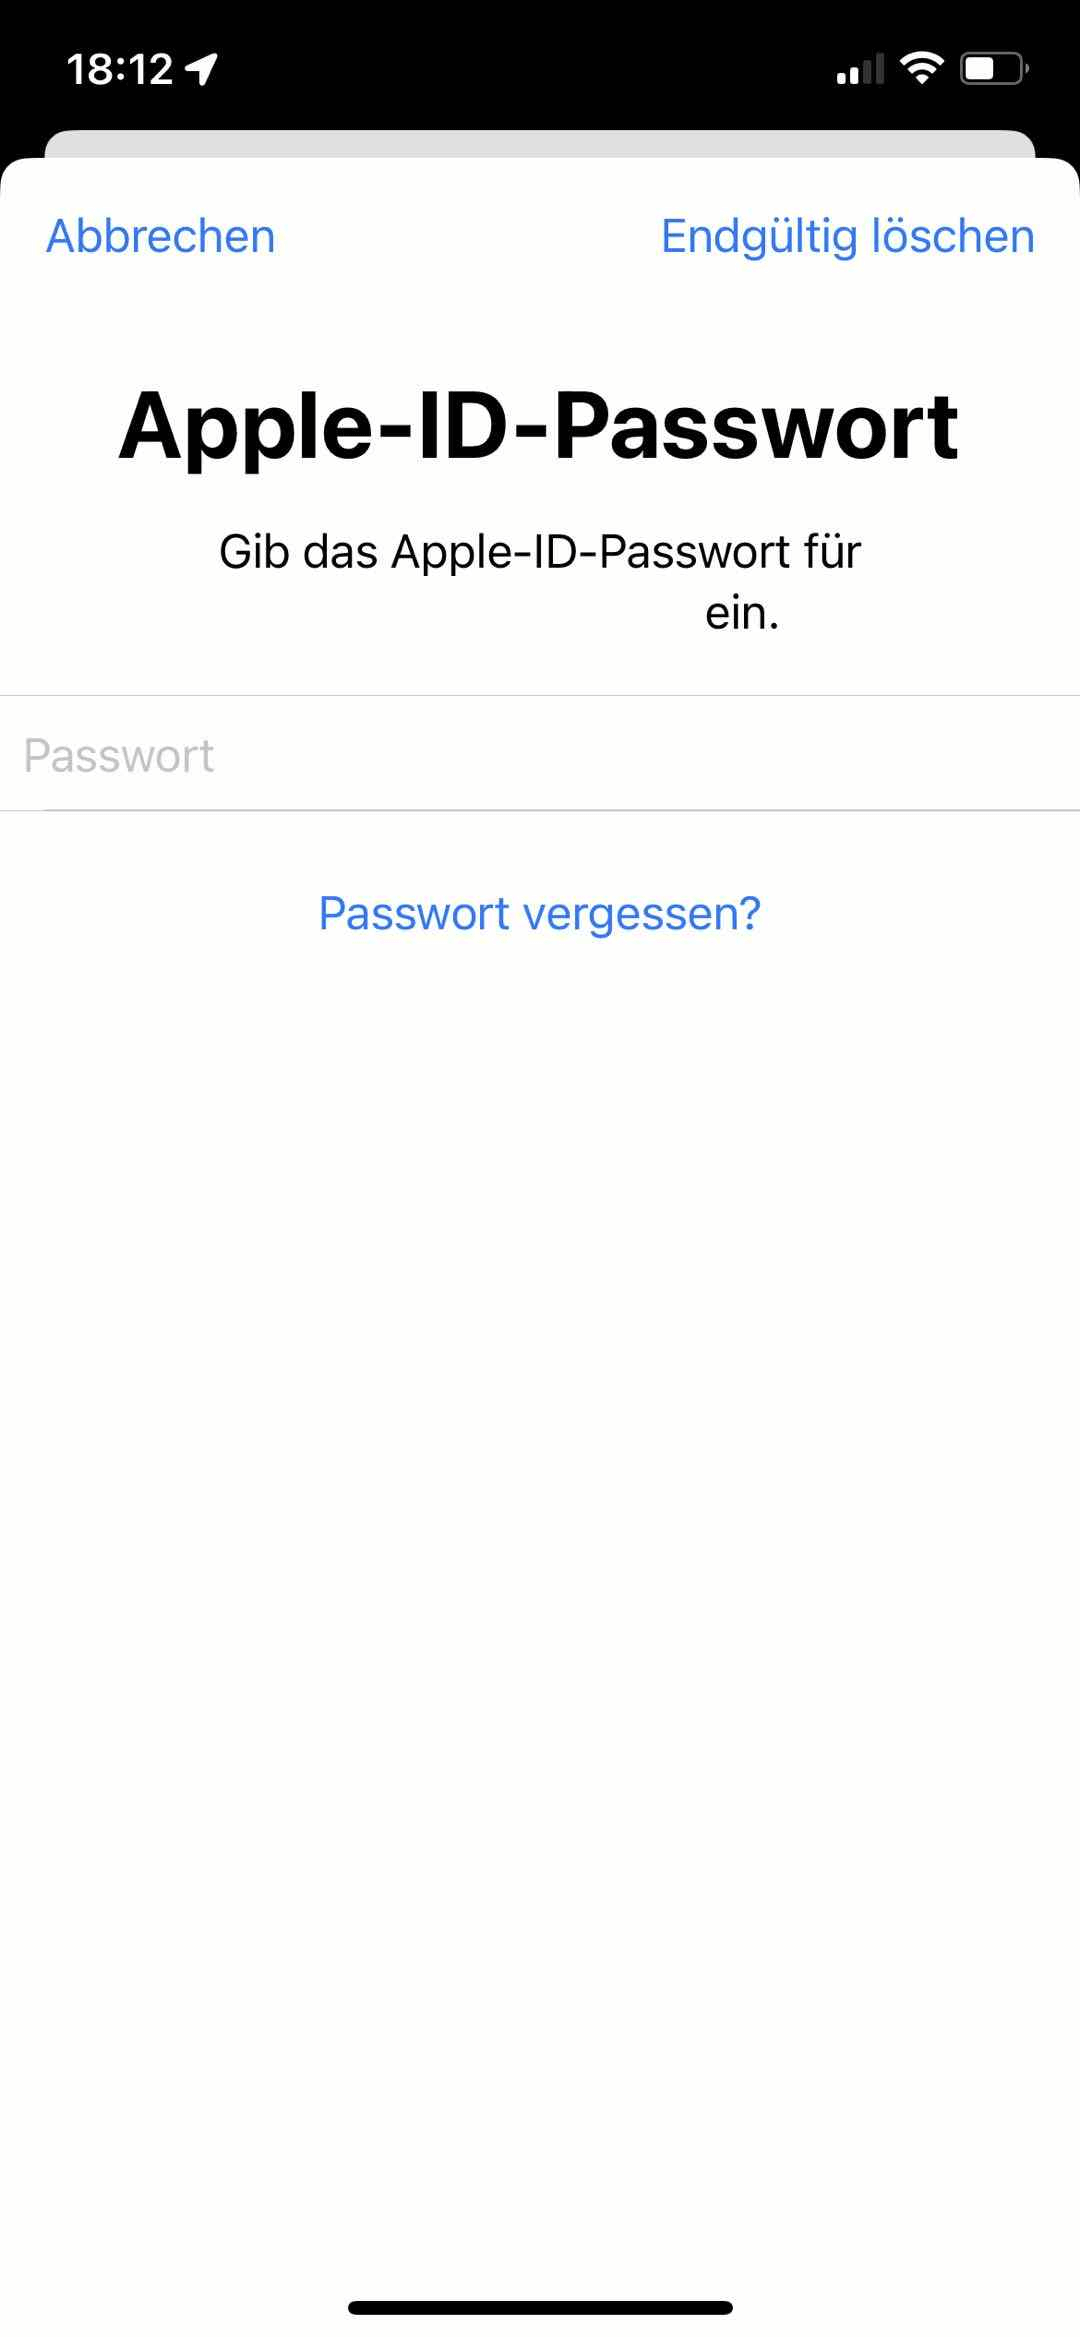 Apple ID Passwort geben und endgültig löschen